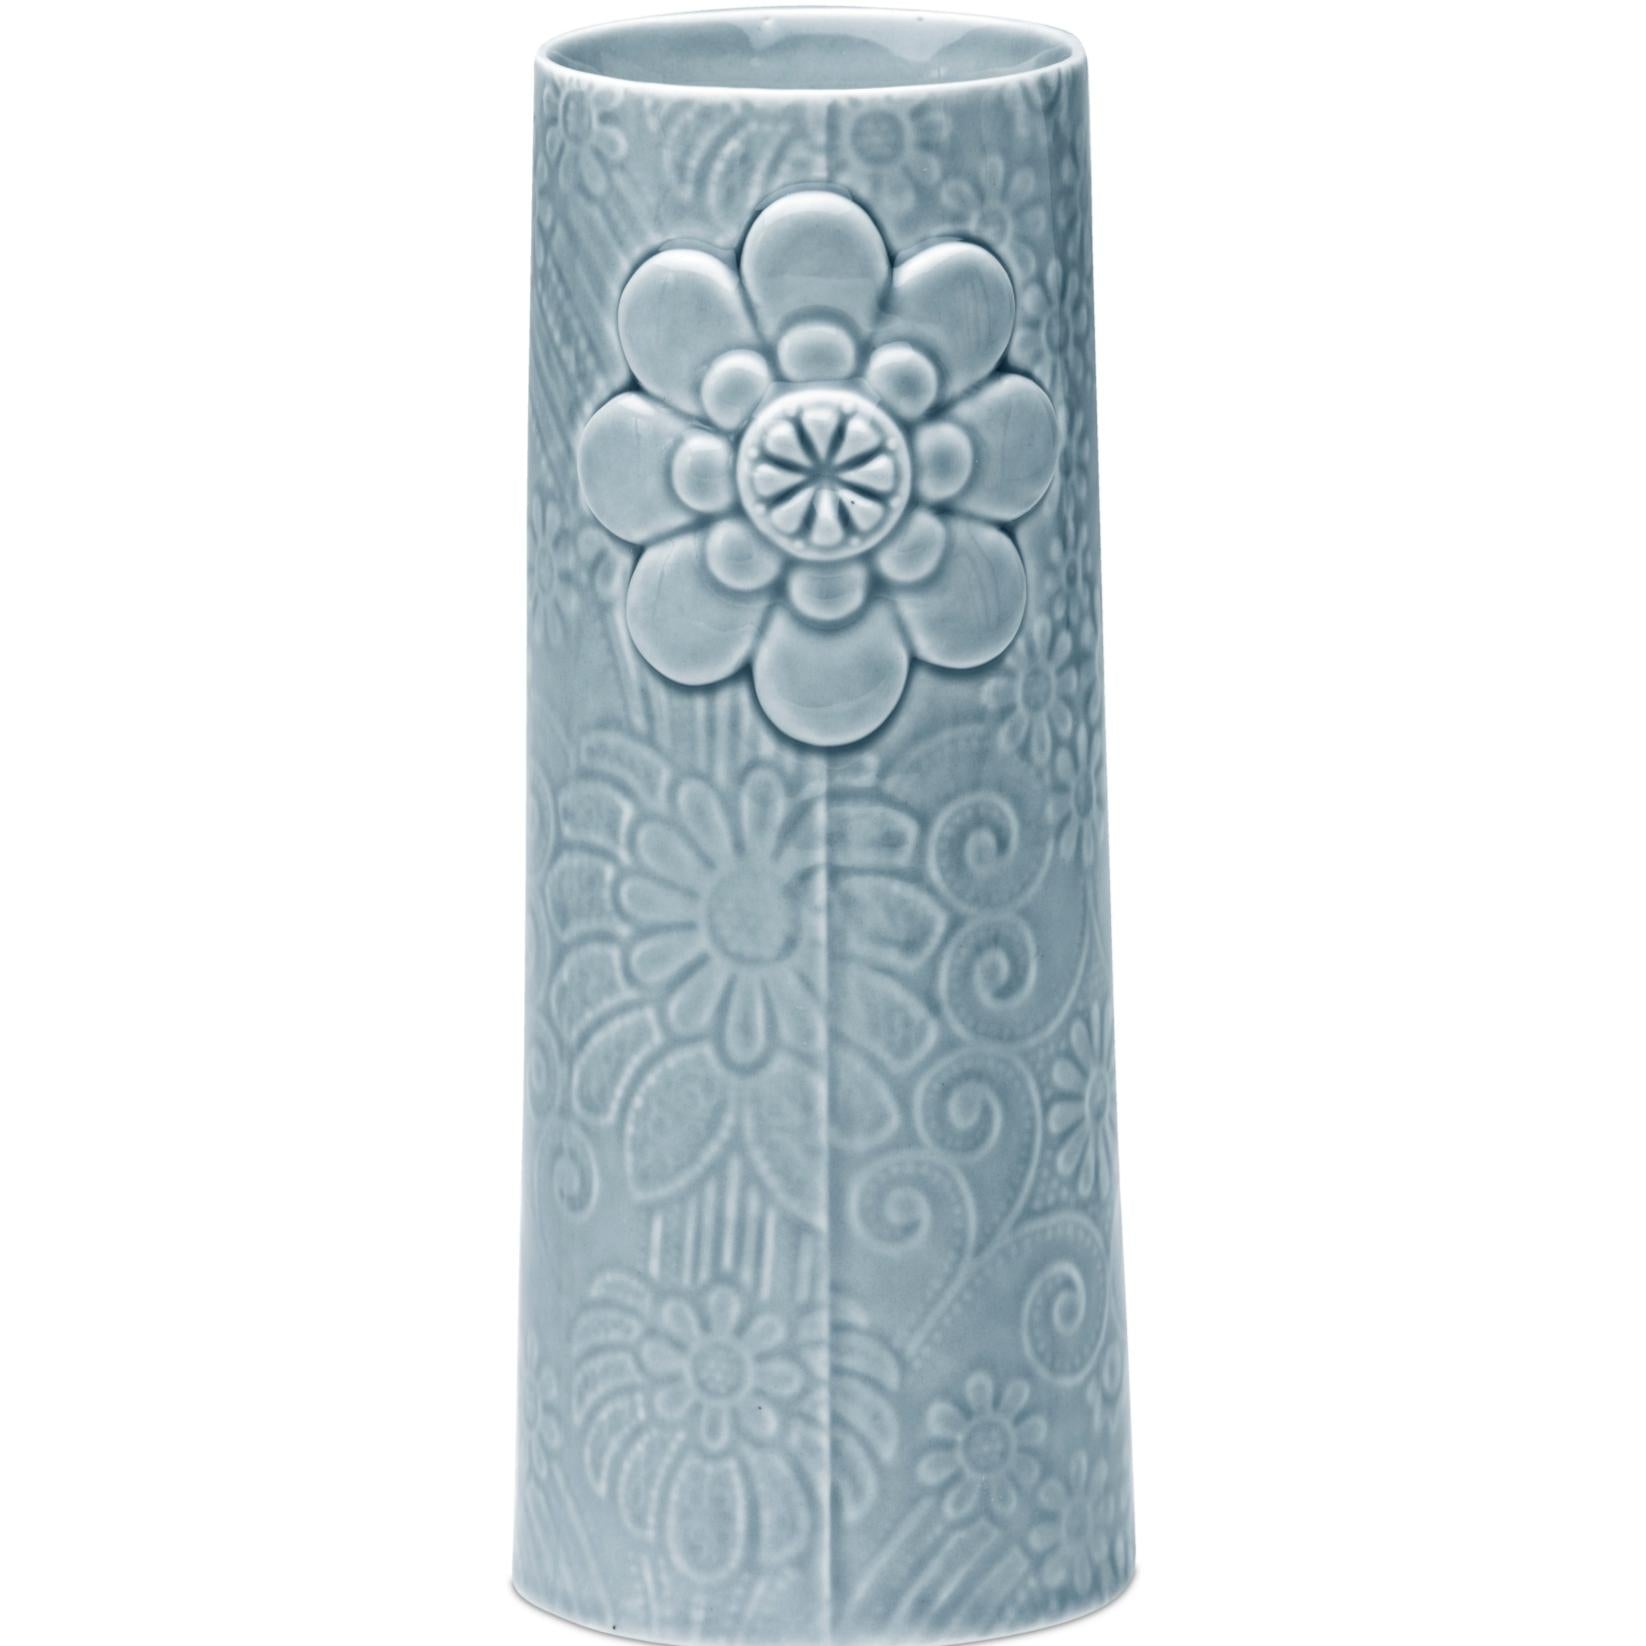 Dottir pipanella květinová váza modrá/šedá, 18,8 cm